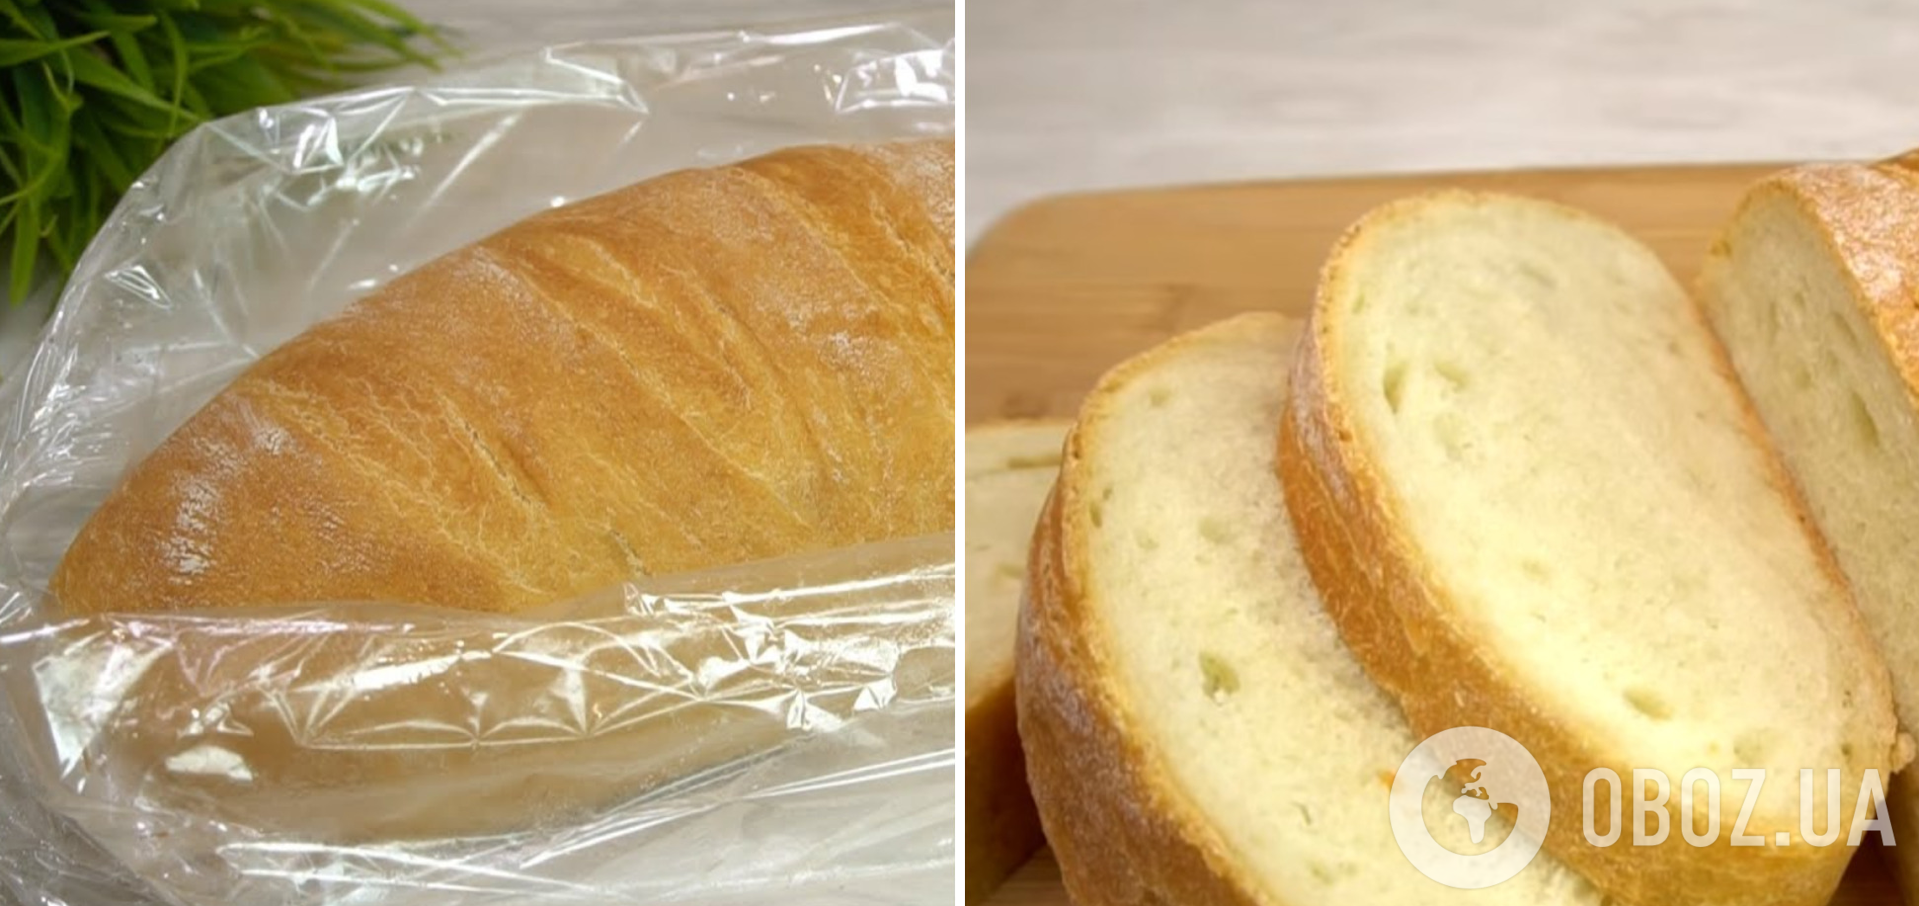 Как испечь хлеб в рукаве